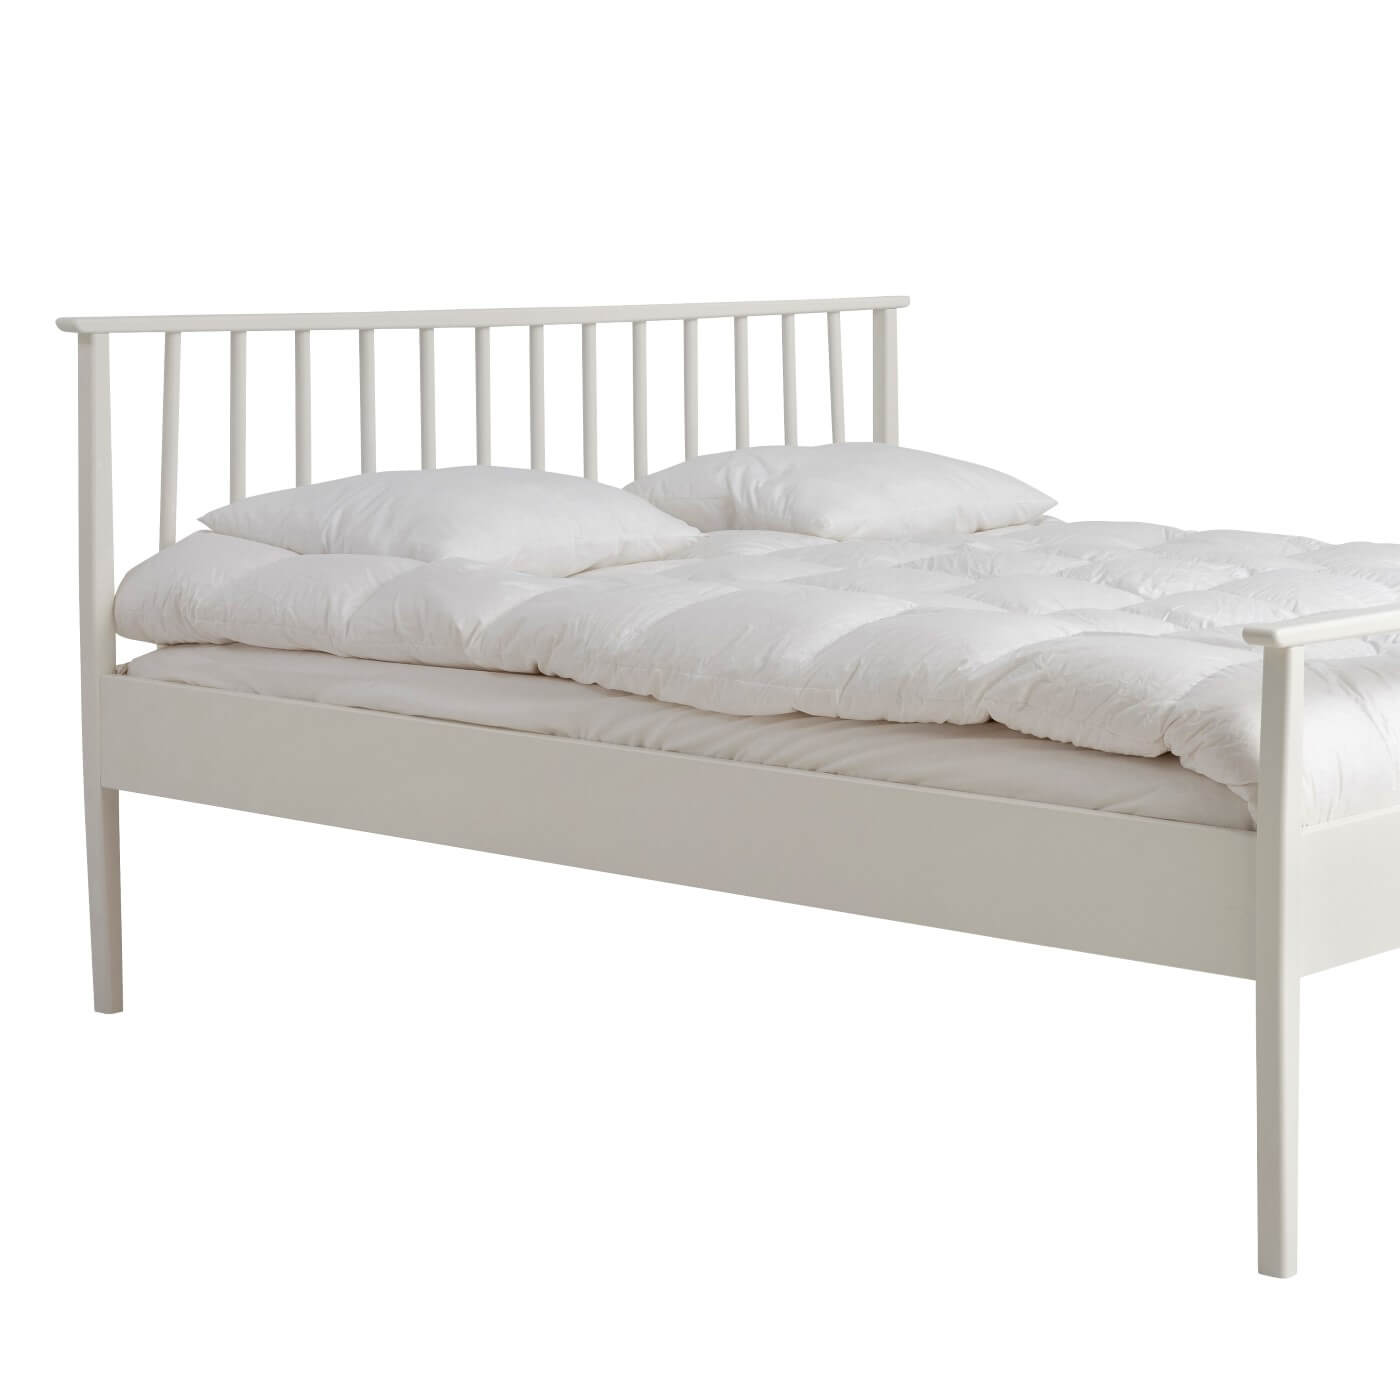 Białe łóżko drewniane nowoczesne NOEL. Fragment łóżka do sypialni 160x200 z drewnianym białym wysokim ażurowym szczytem i leżącą białą kołdrą z poduszkami. Nowoczesny skandynawski design